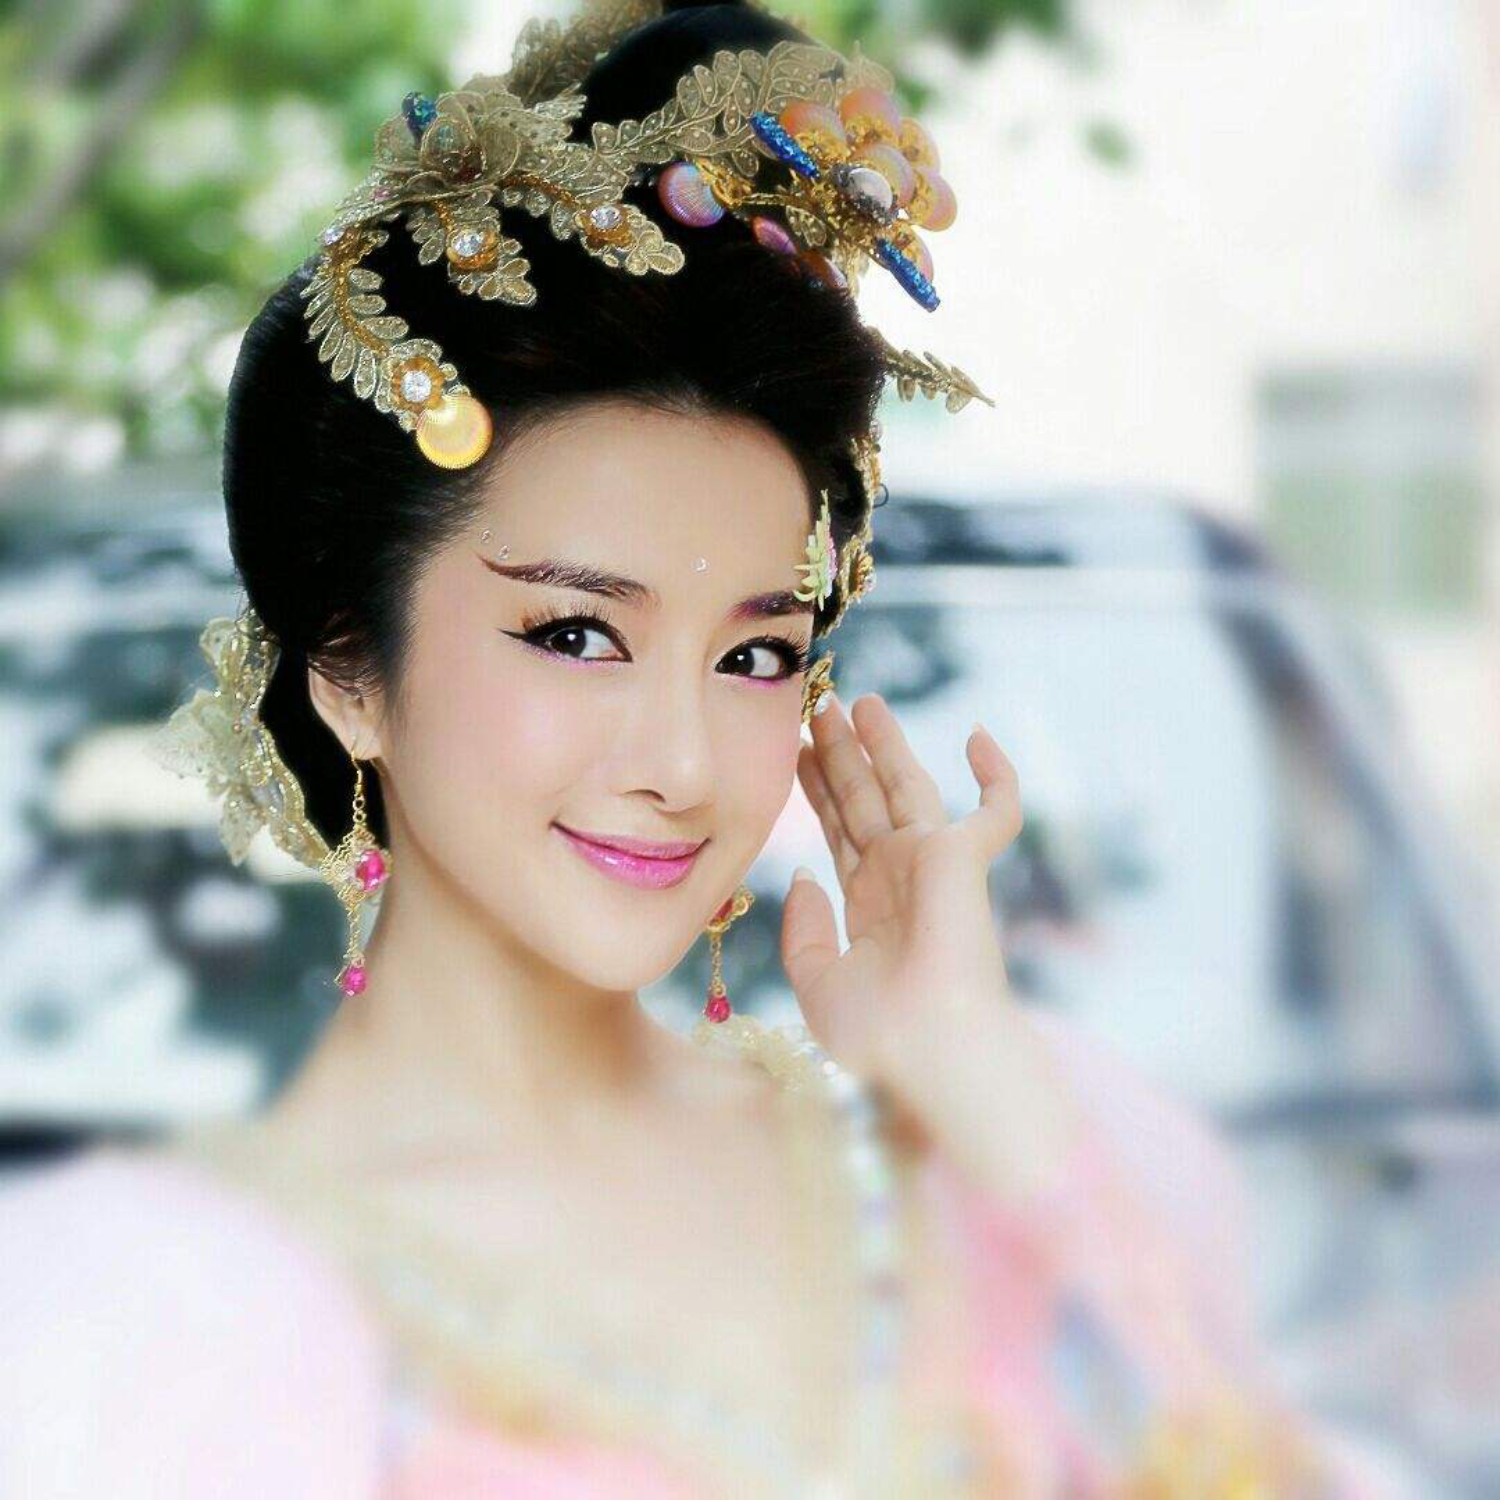 李晓依在2011年封神榜中饰演的苏妲己胡仙儿;妲己本人是一个善良的